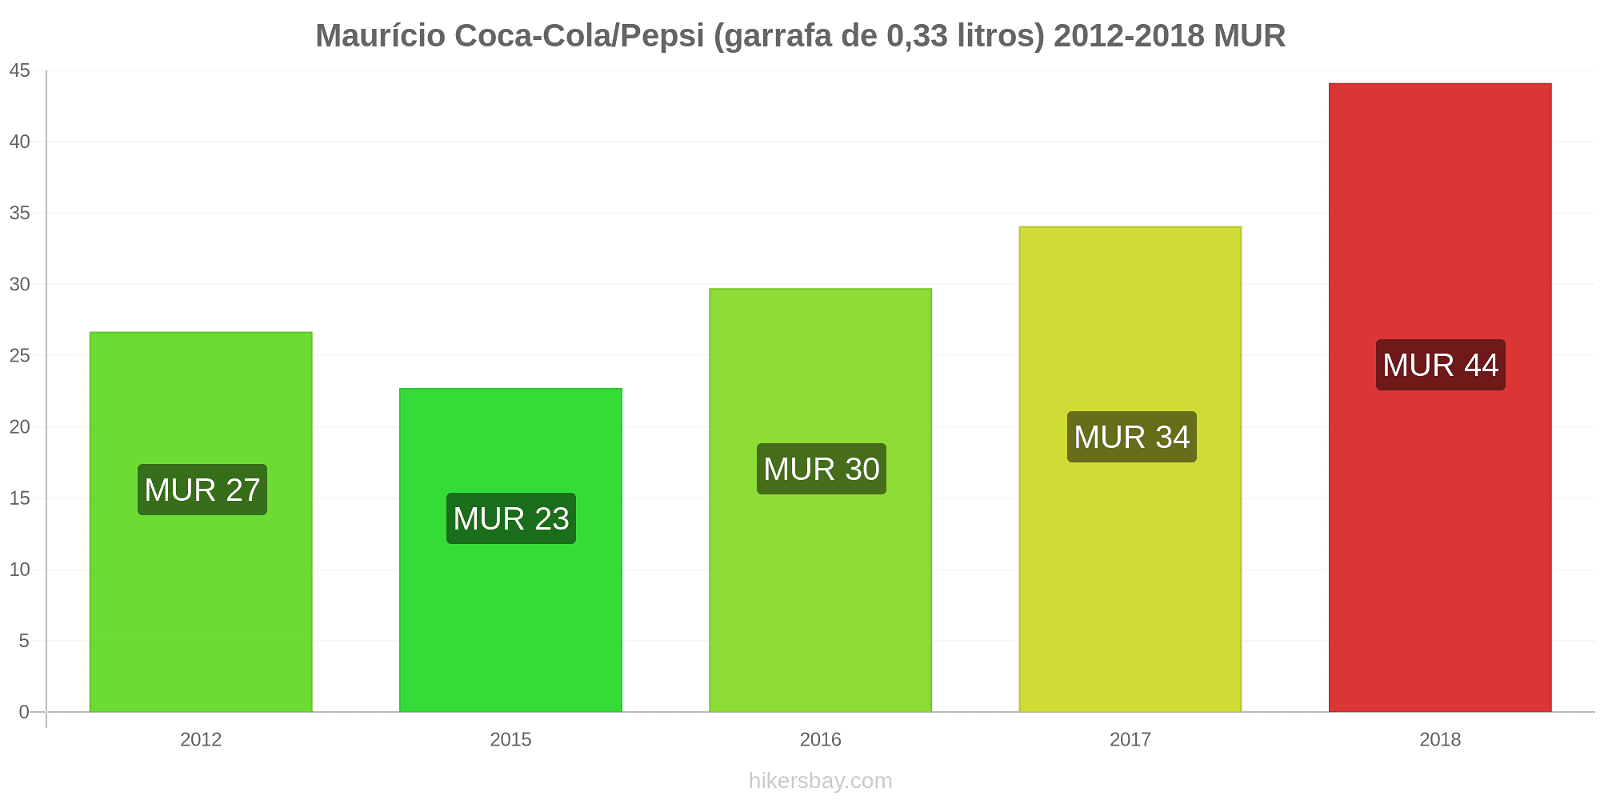 Maurício mudanças de preços Coca-Cola/Pepsi (garrafa de 0.33 litros) hikersbay.com